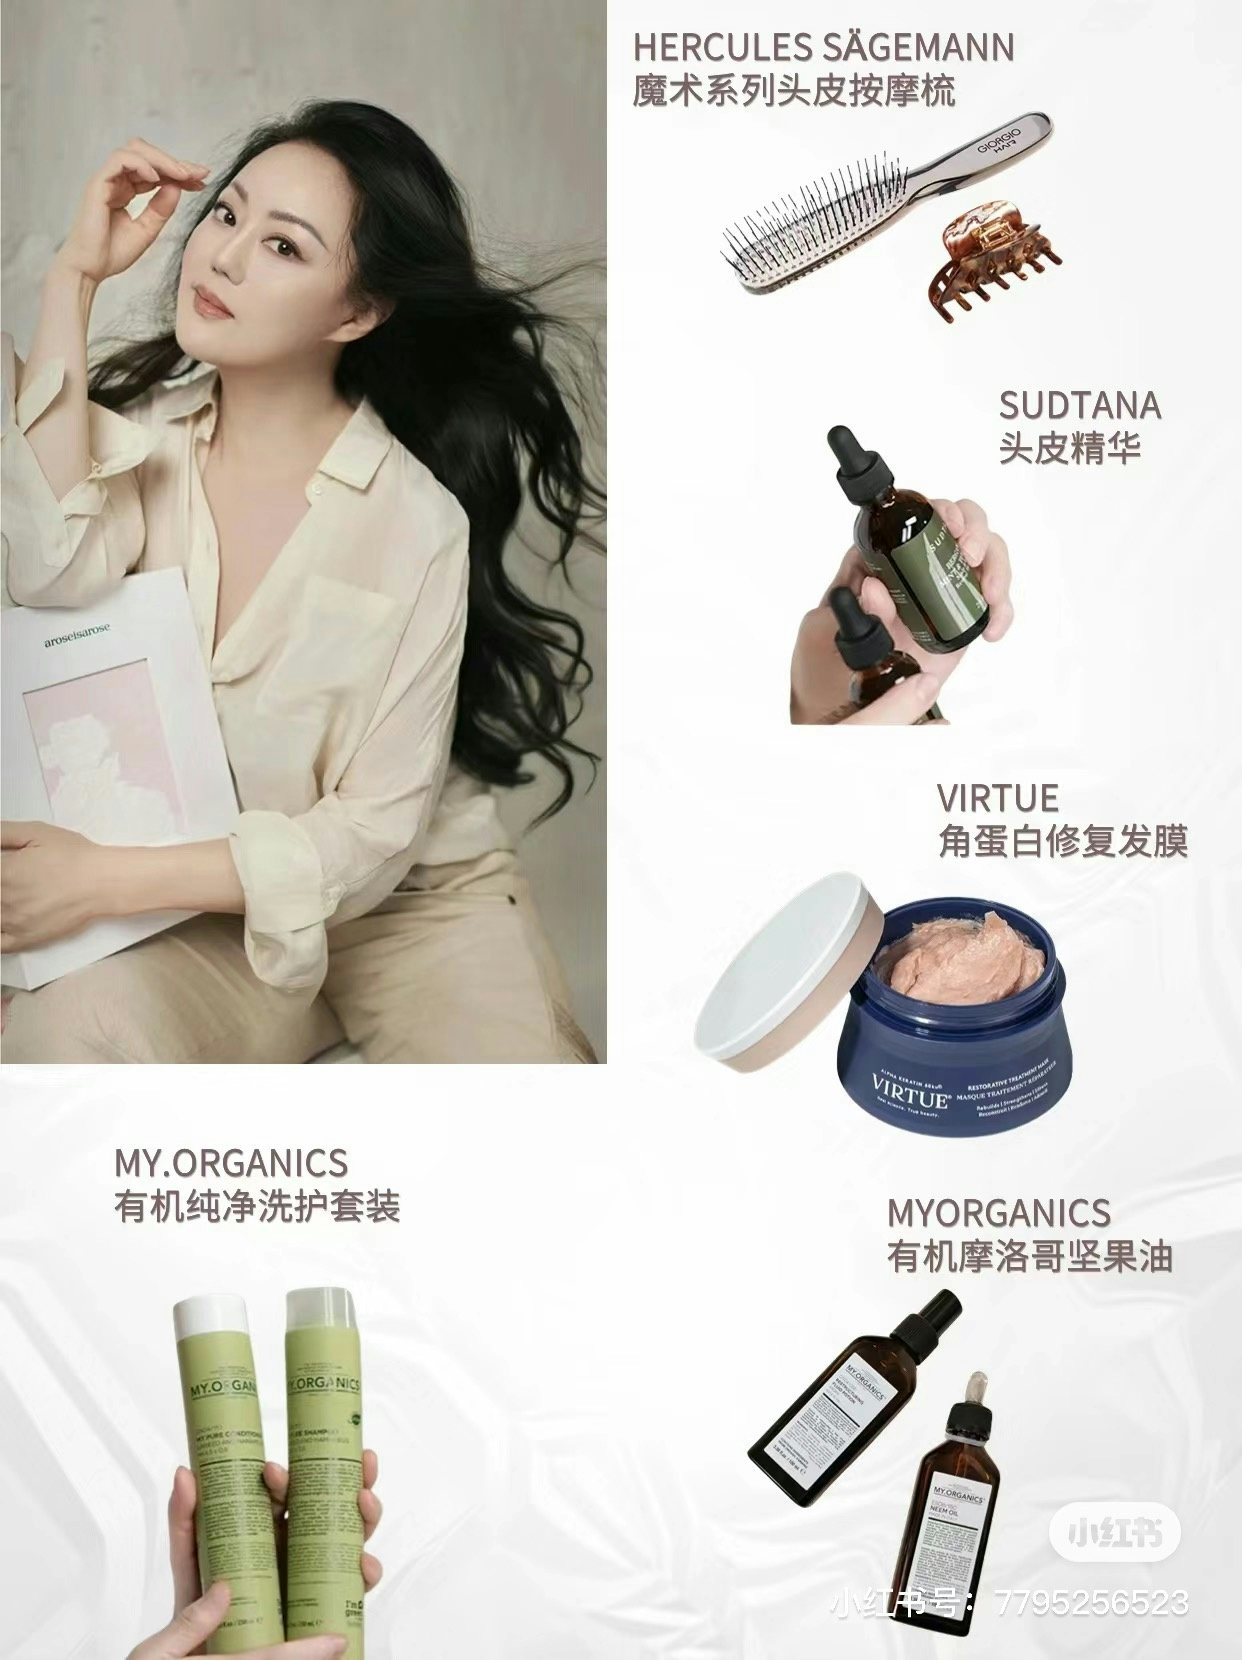 Zhang Xiaohui promoting haircare brands. Photo: Xiaohongshu